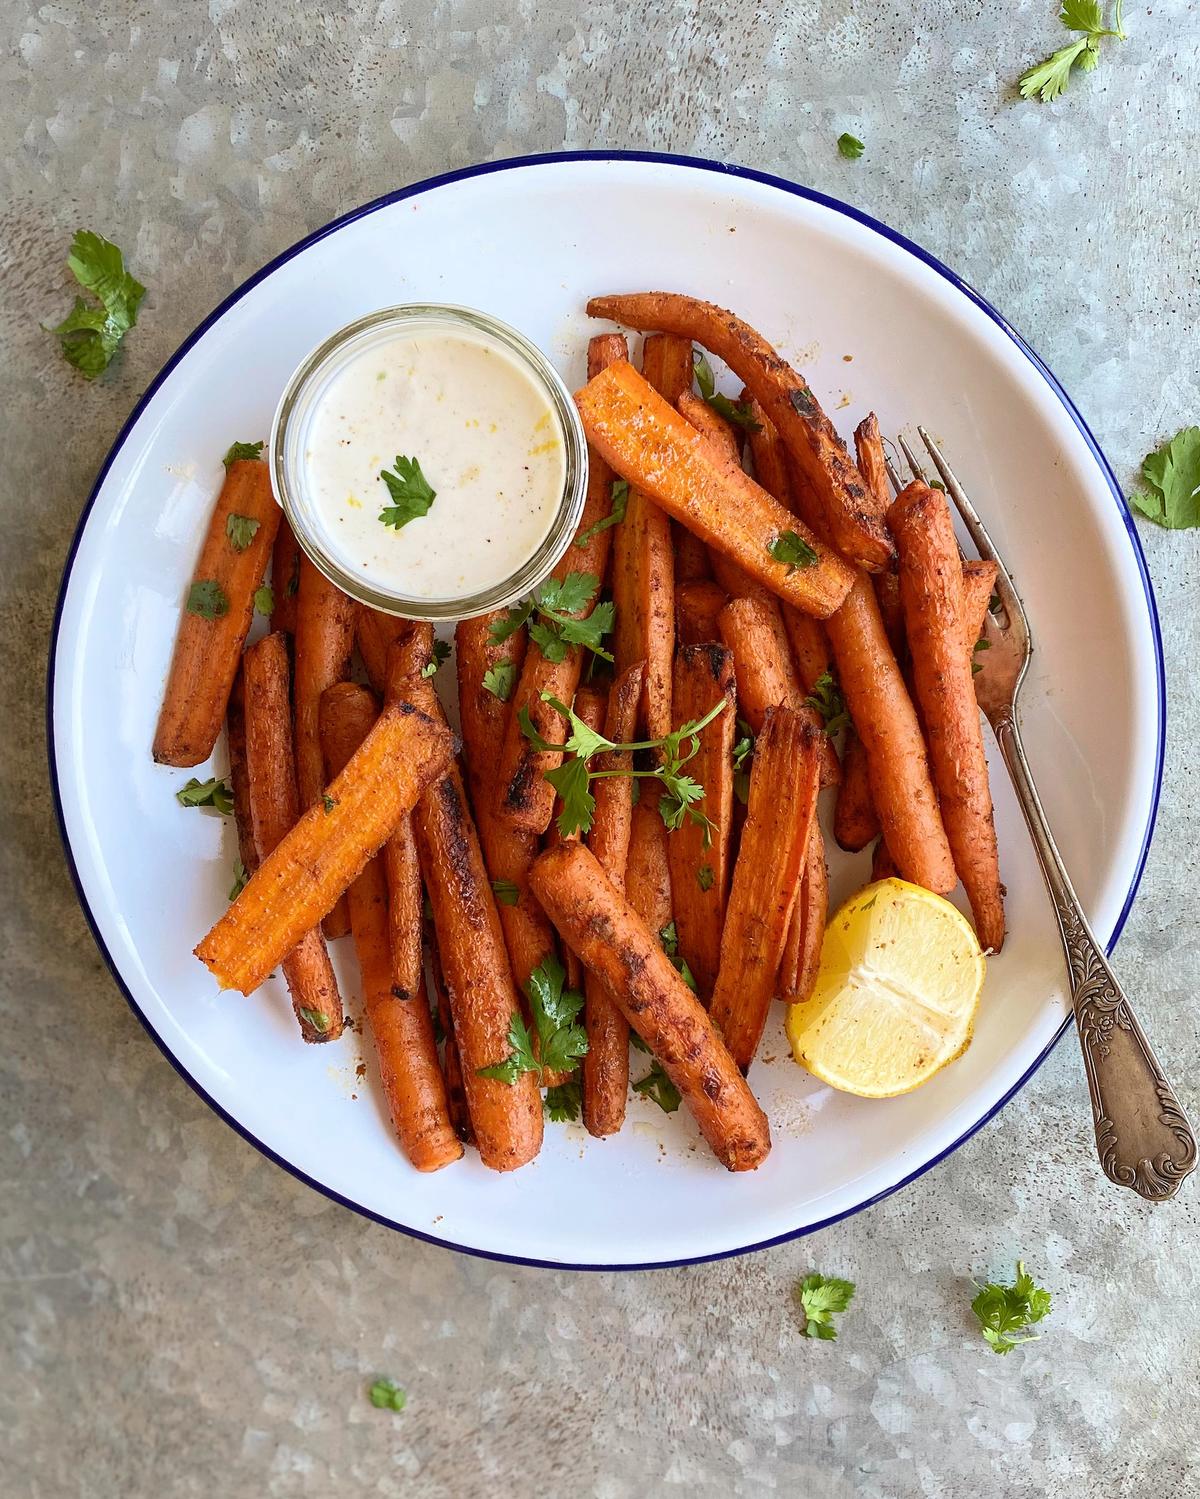 Roasted carrots make an elegantly simple side dish or main vegetable dish. (Lynda Balslev for Tastefood)